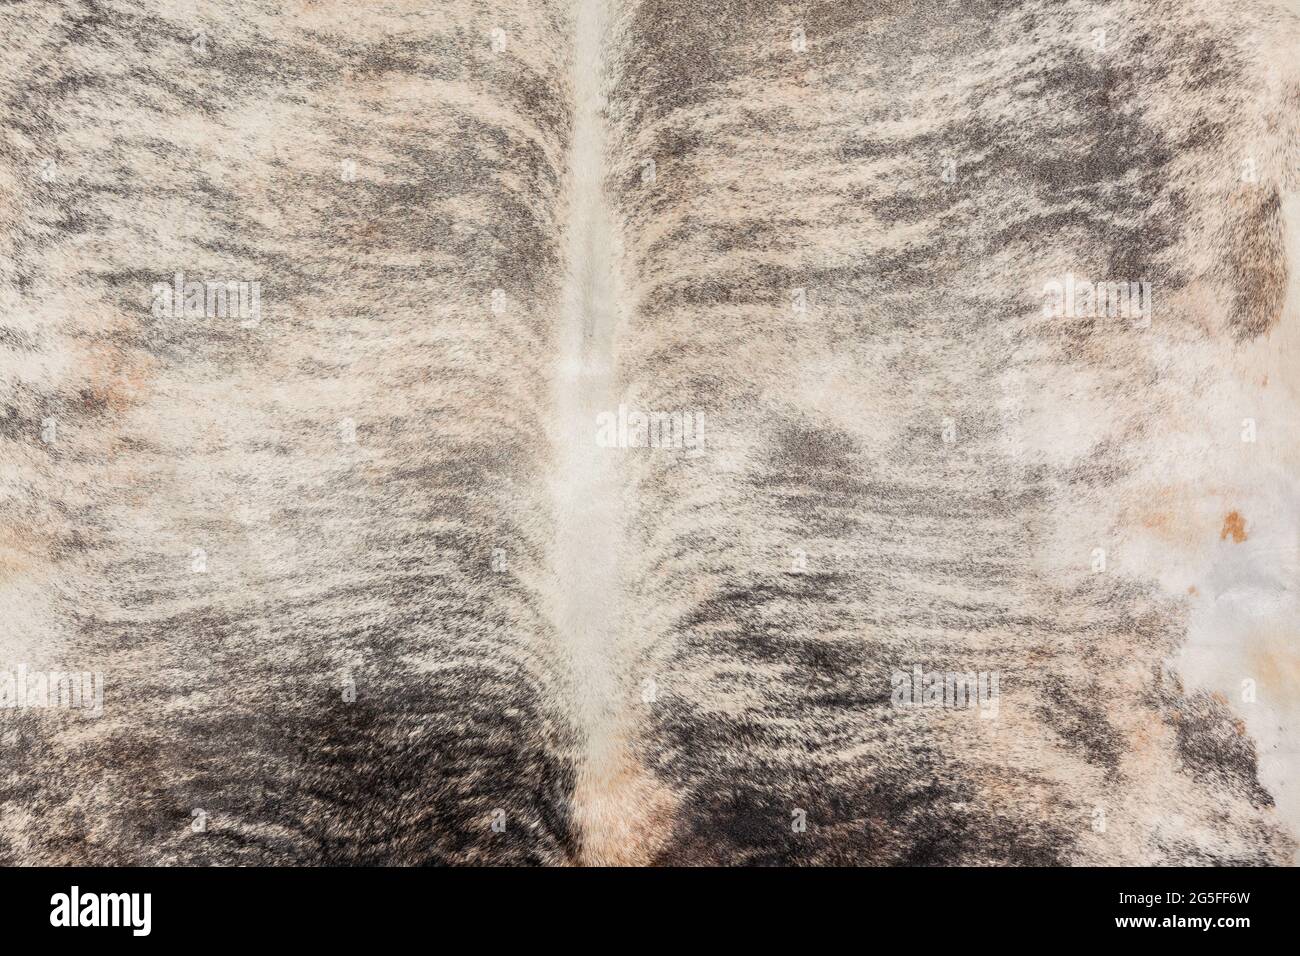 Bestiame animale pelliccia pelle pelli closeup foto immagine astratta sfondo dettaglio di pulito trattato insieme per rendere pelliccia tappeto arredamento stile di vita. Foto Stock